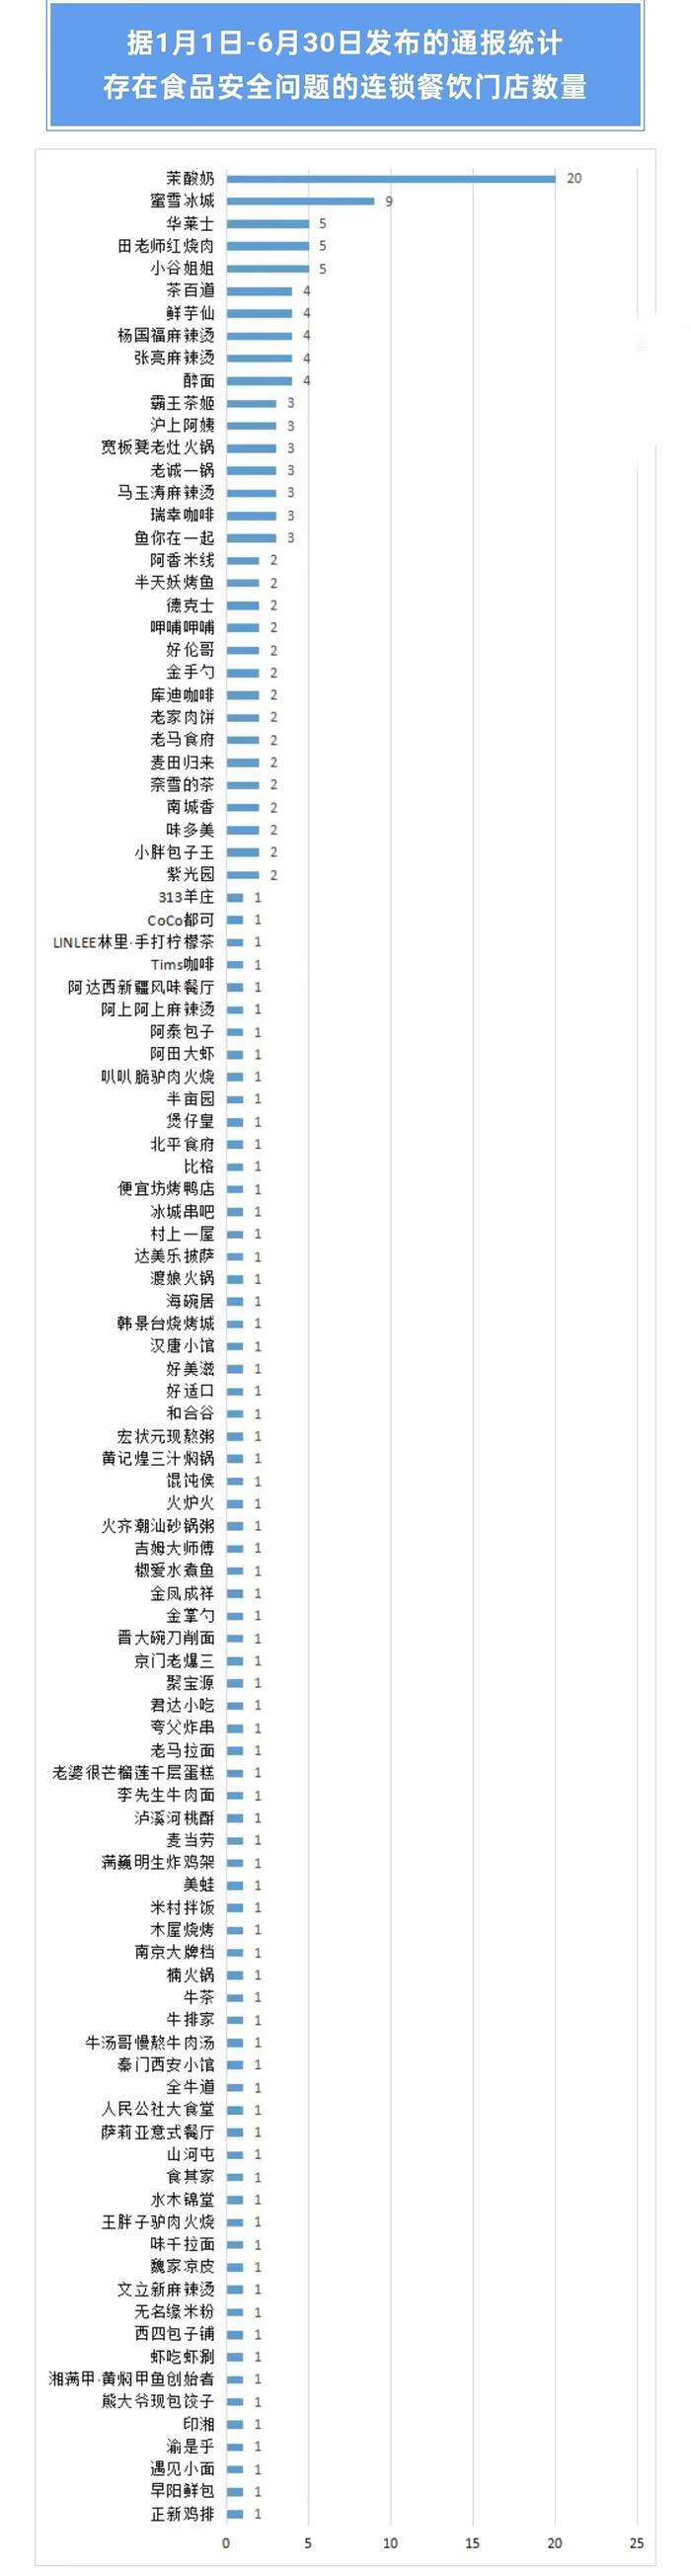 北京市消协公布食品安全检查结果 茉酸奶、奈雪的茶、霸王茶姬等被点名